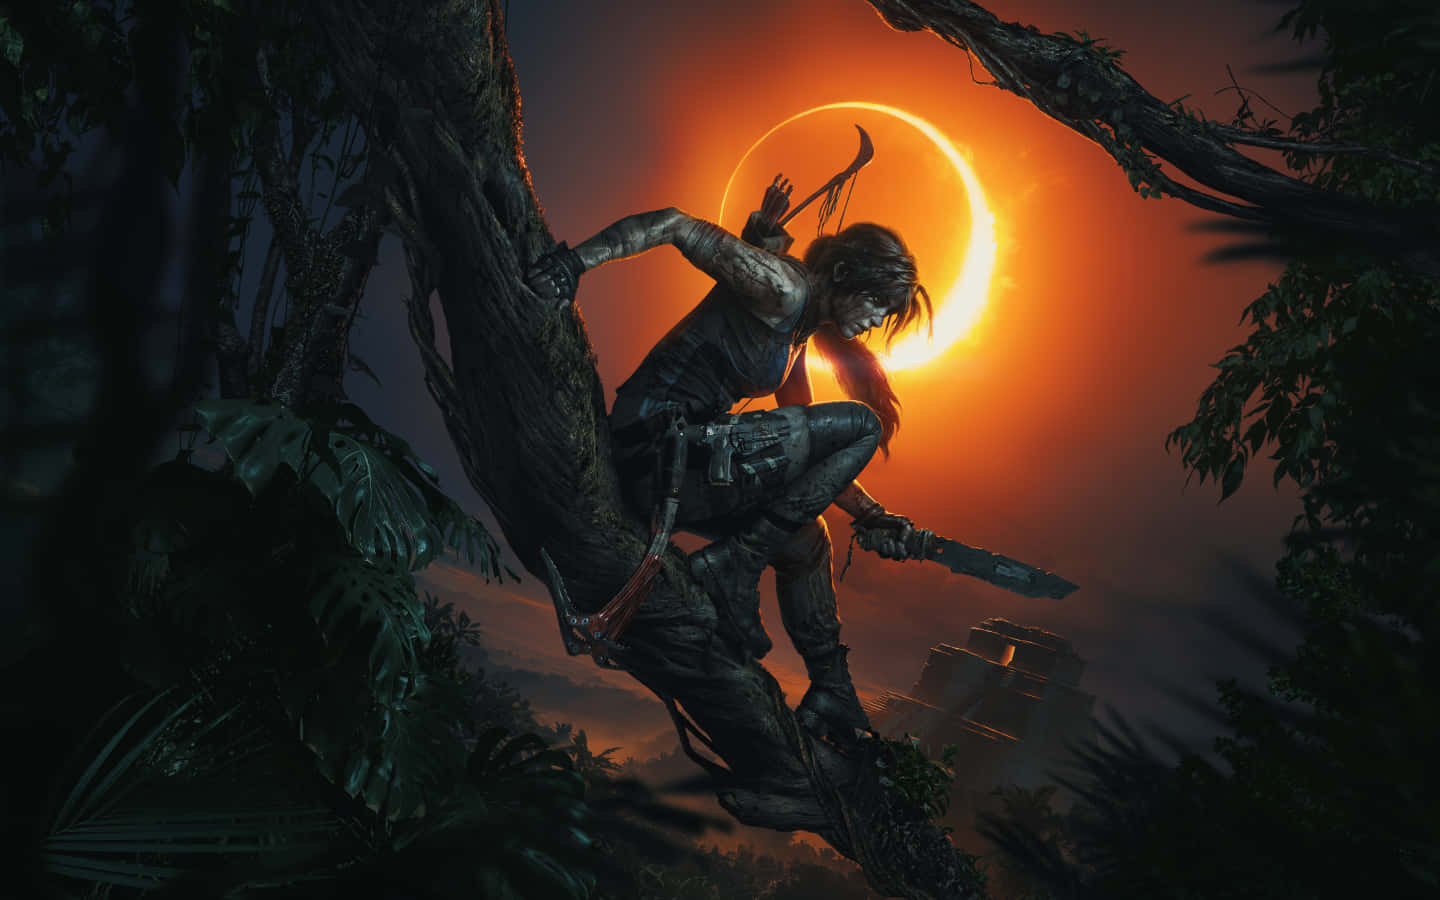 Preparatiper Un'avventura Epica Con Lara Croft In Shadow Of The Tomb Raider